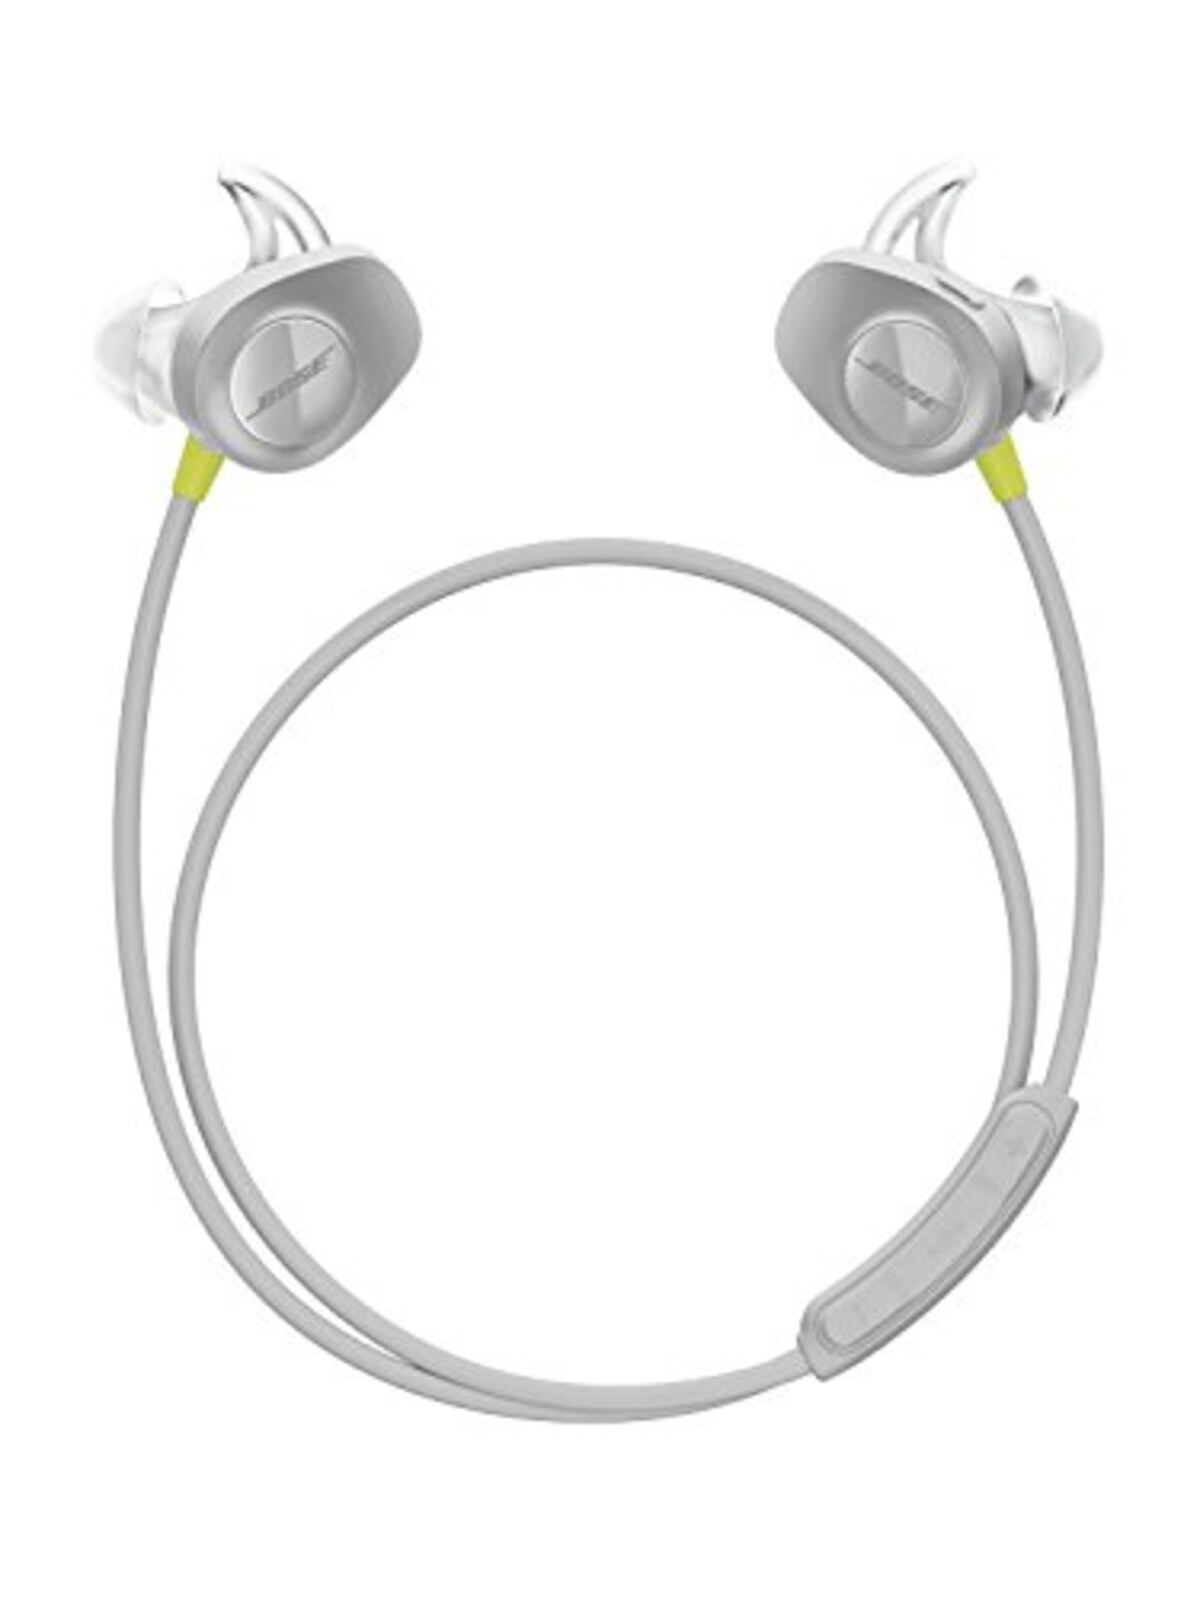 SoundSport wireless headphones